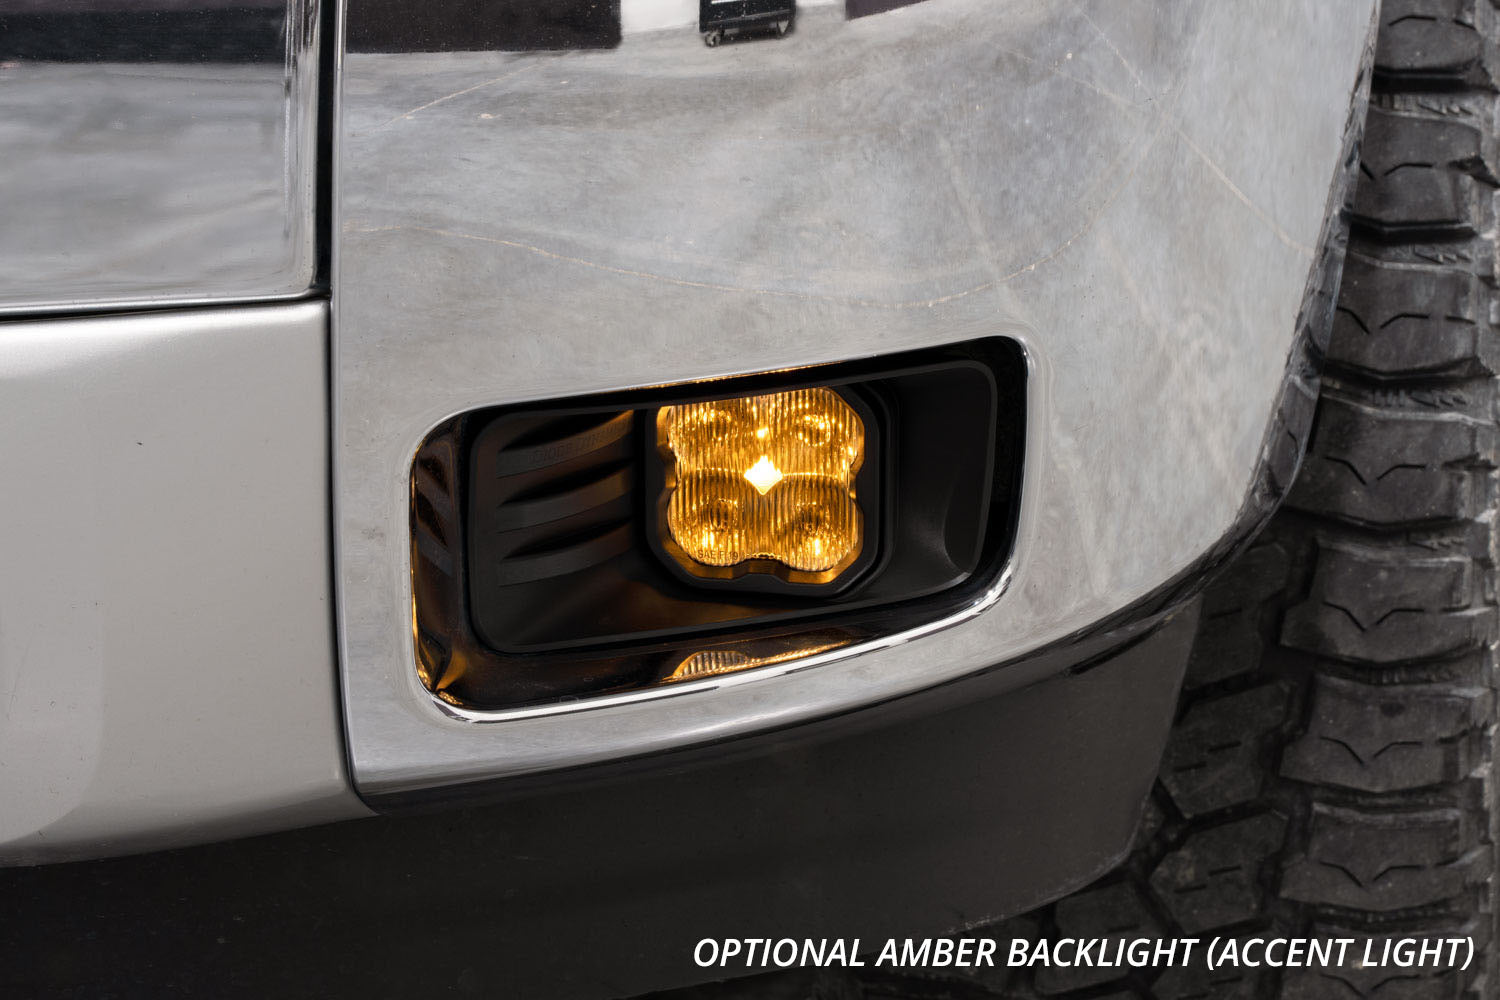 SS3 LED Fog Light Kit for 2015-2020 GMC Yukon, White SAE Fog Sport Diode Dynamics